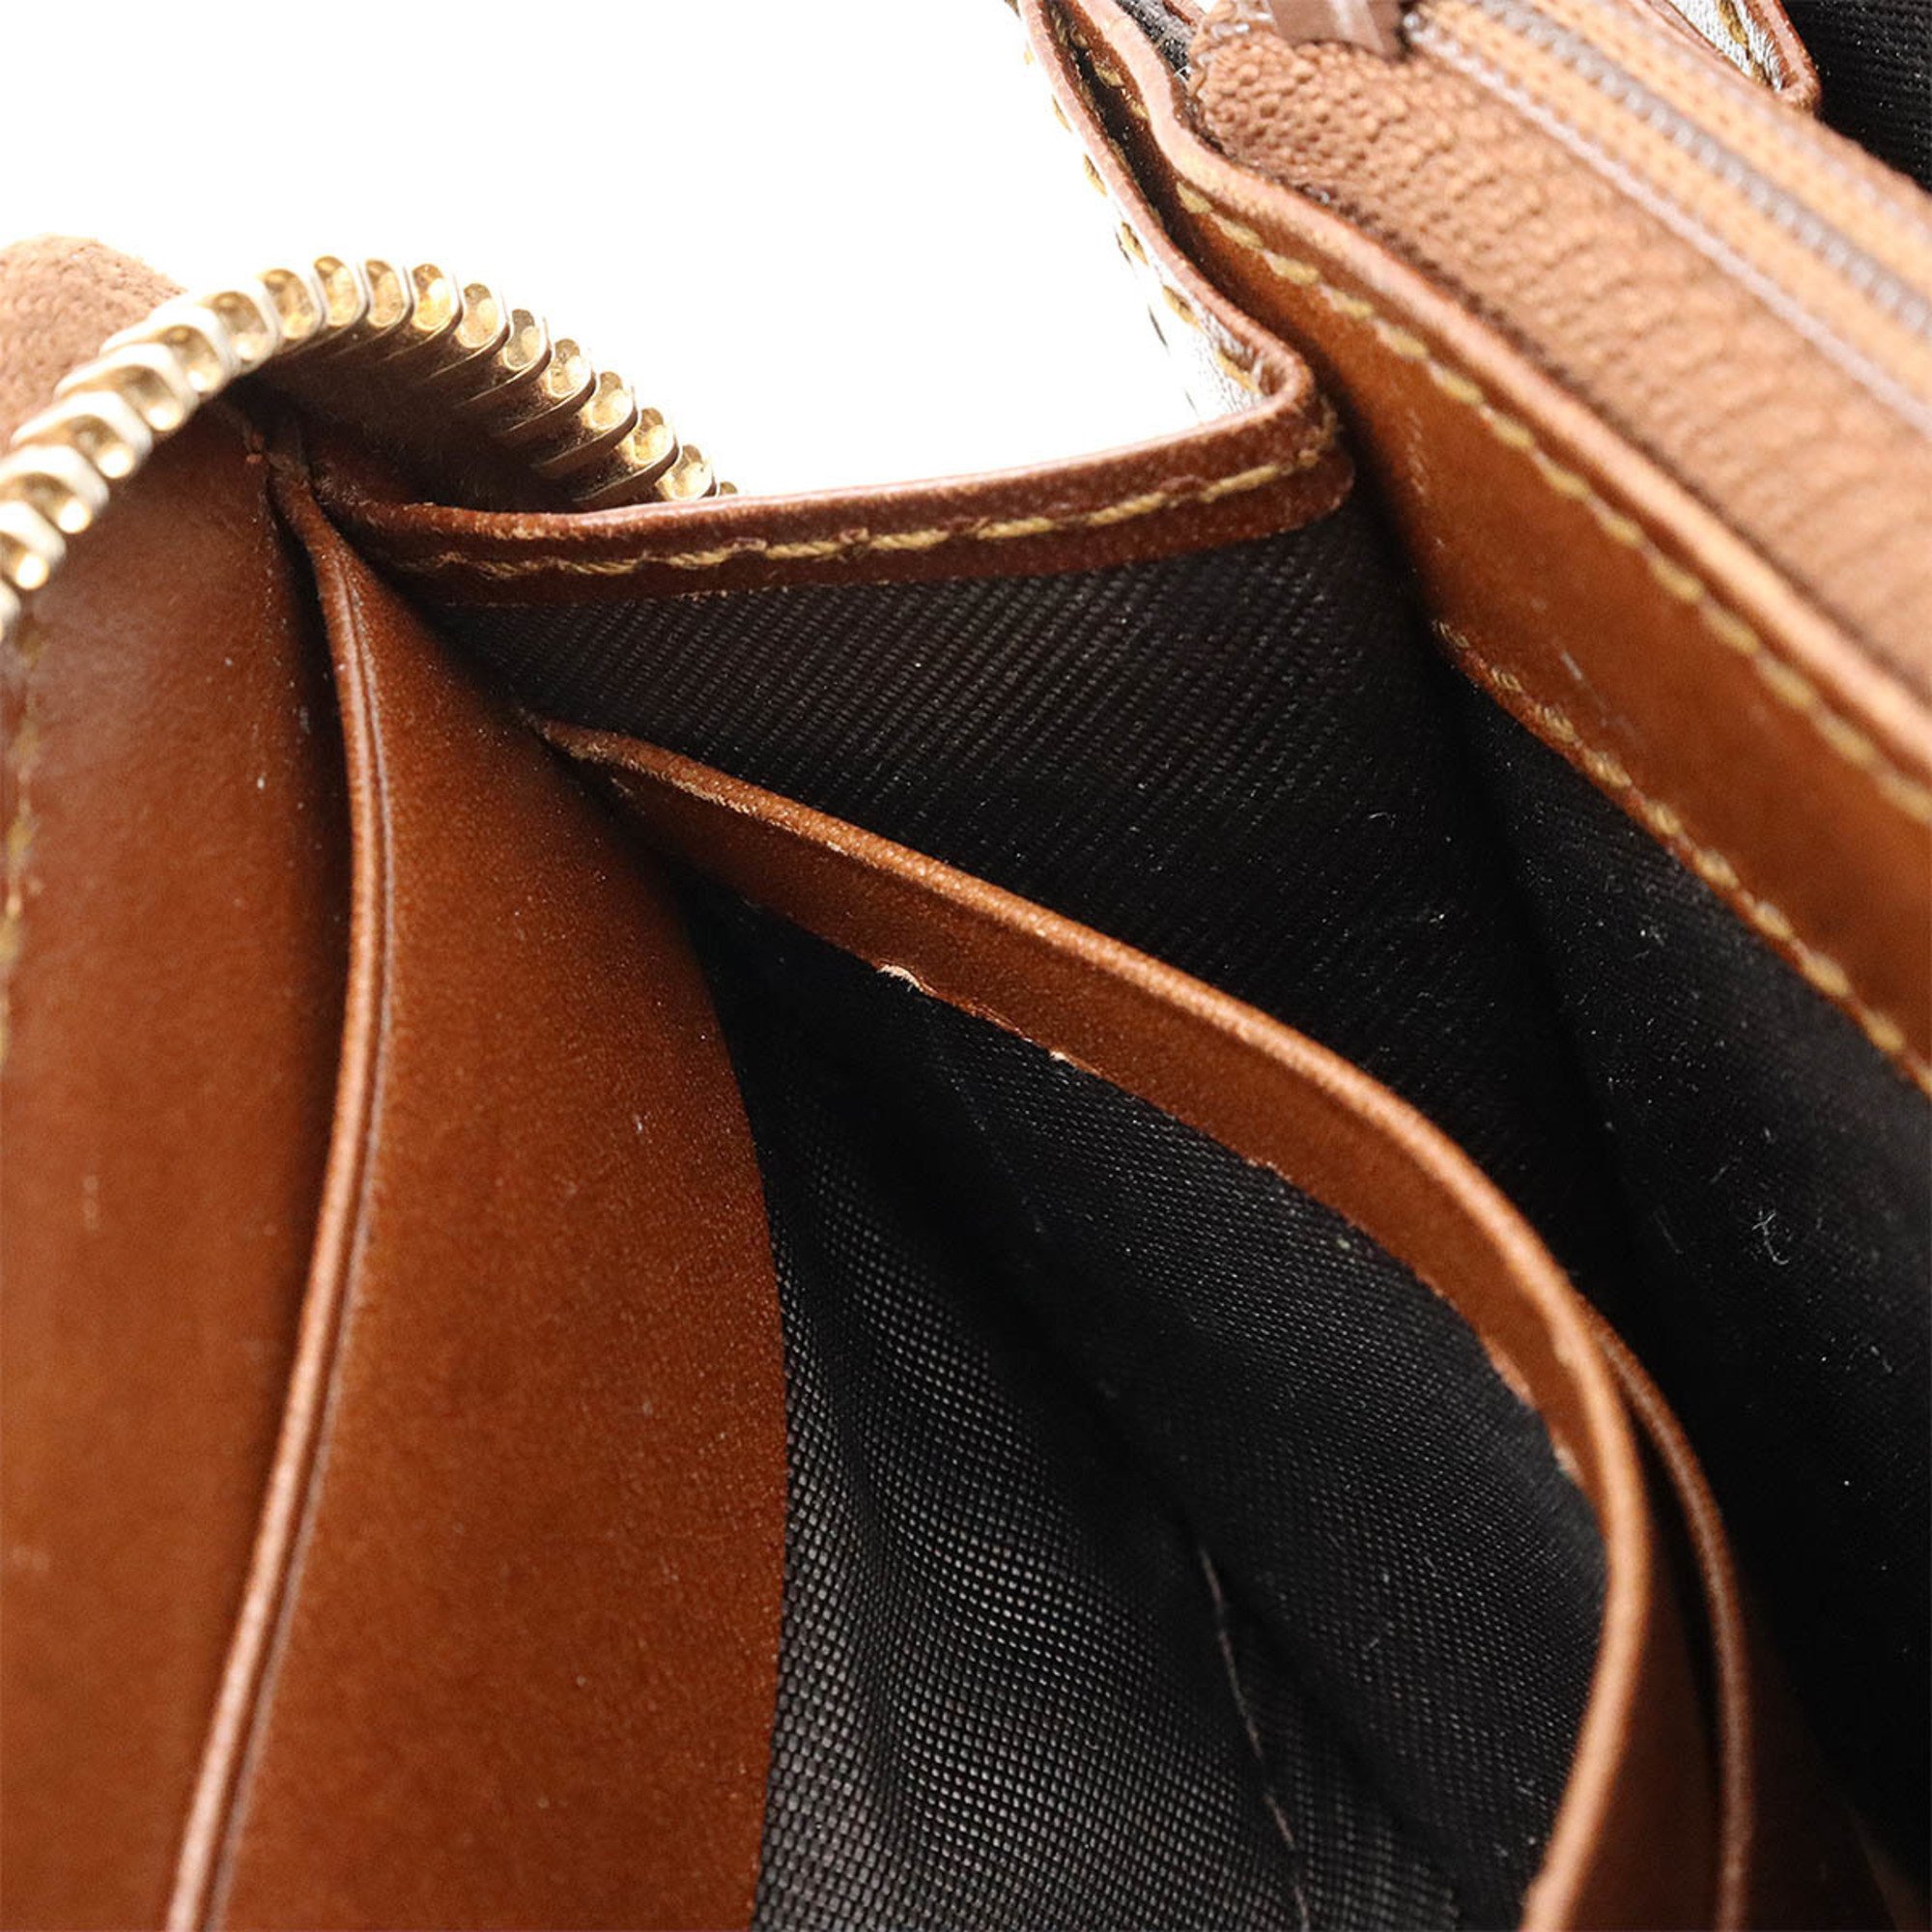 GUCCI GG Supreme Round Long Wallet PVC Leather Khaki Beige Brown 410102